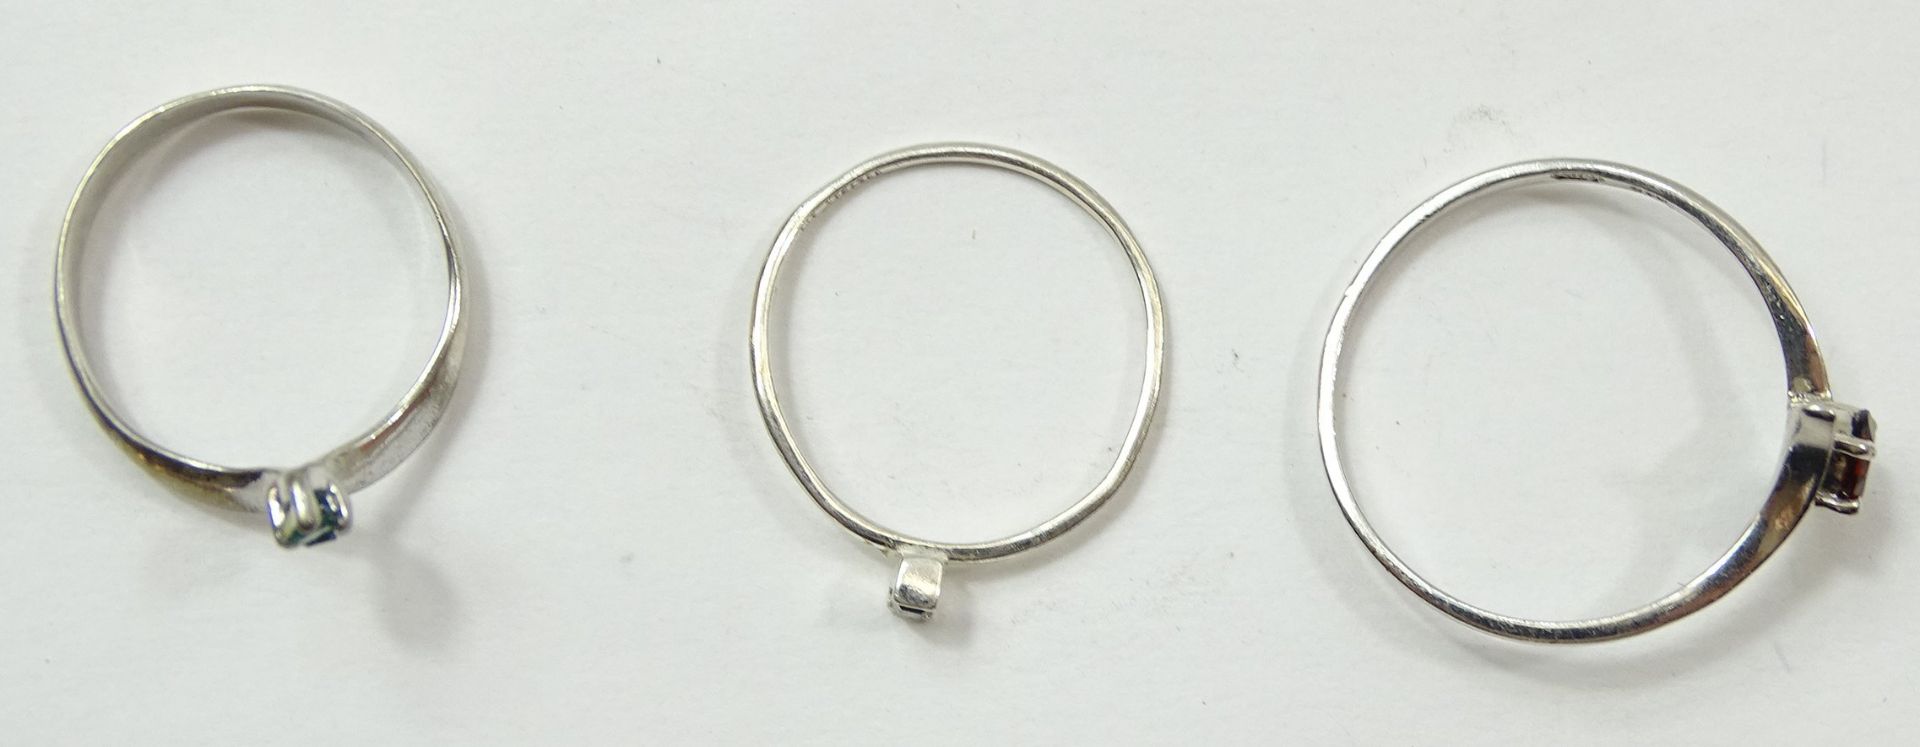 3 zierliche Silberringe, 2 x 925/000, 1 x geprüft, mit Farbsteinbesatz, RG 63, 54, 52, 3 gr., leich - Bild 6 aus 6